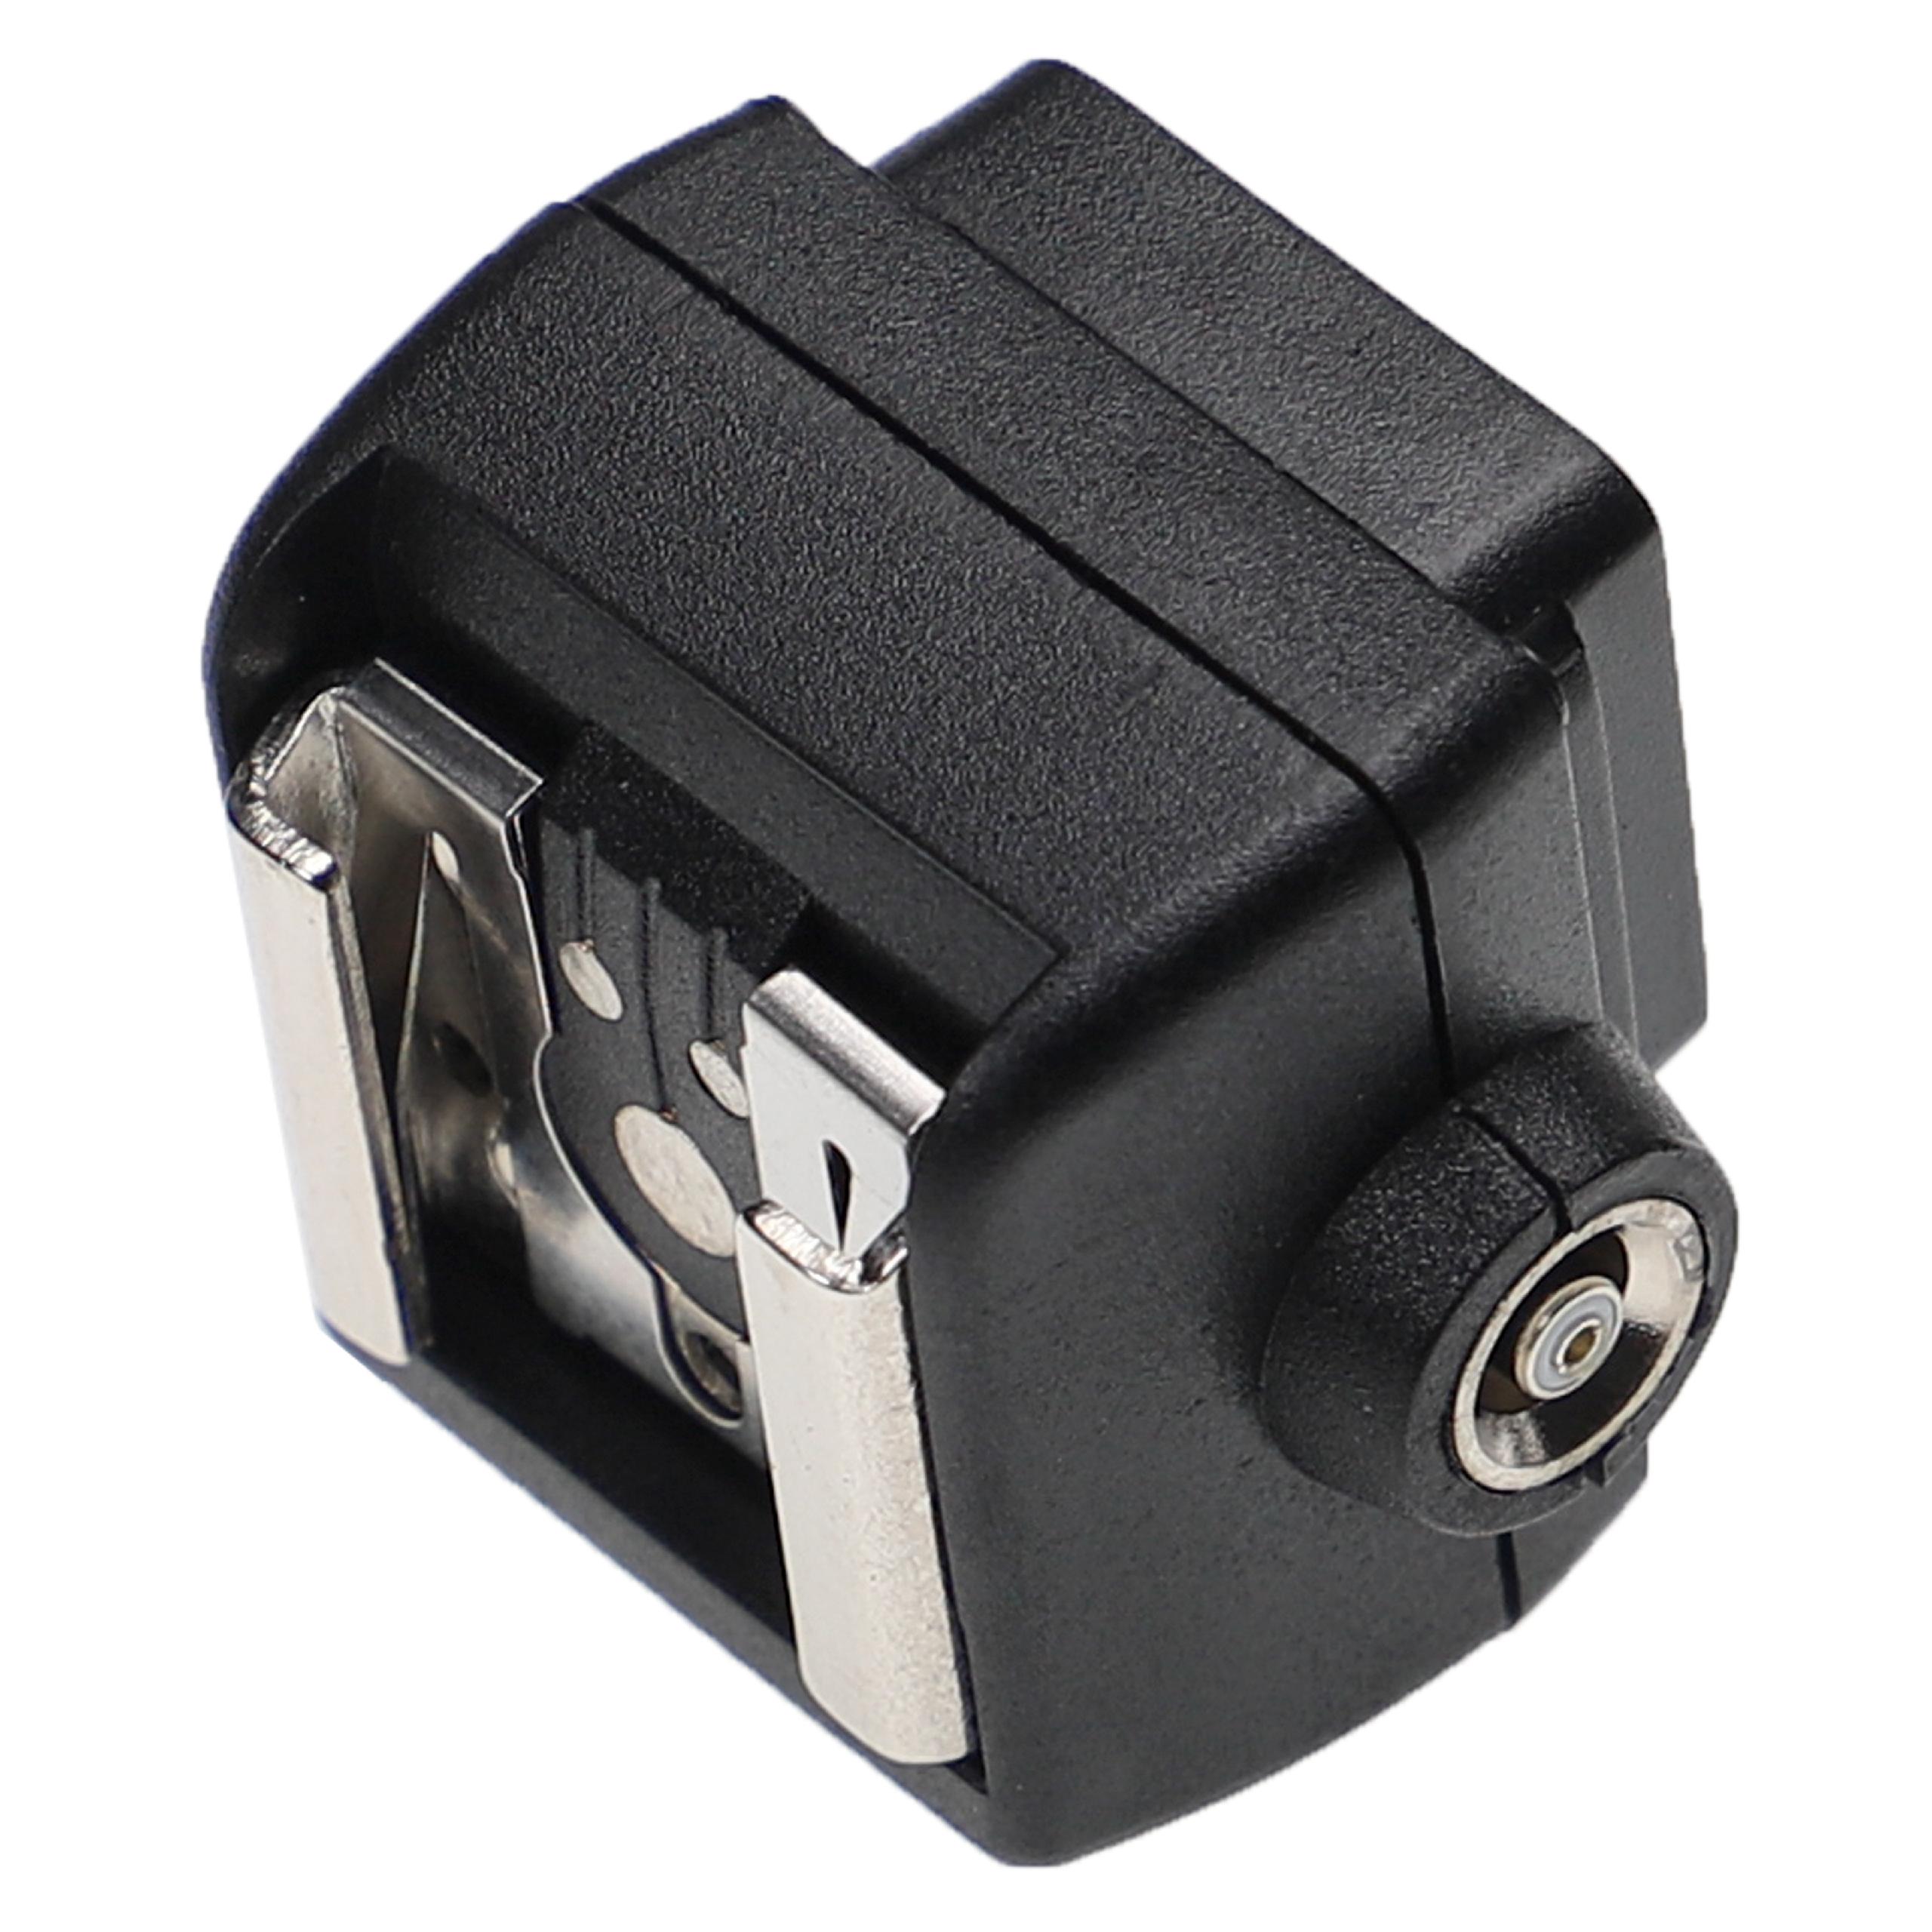 Blitzschuhadapter für Pentax / Nikon / Sony / Canon / Olympus AF540FGZ Kamera u.a. - Blitzadapter